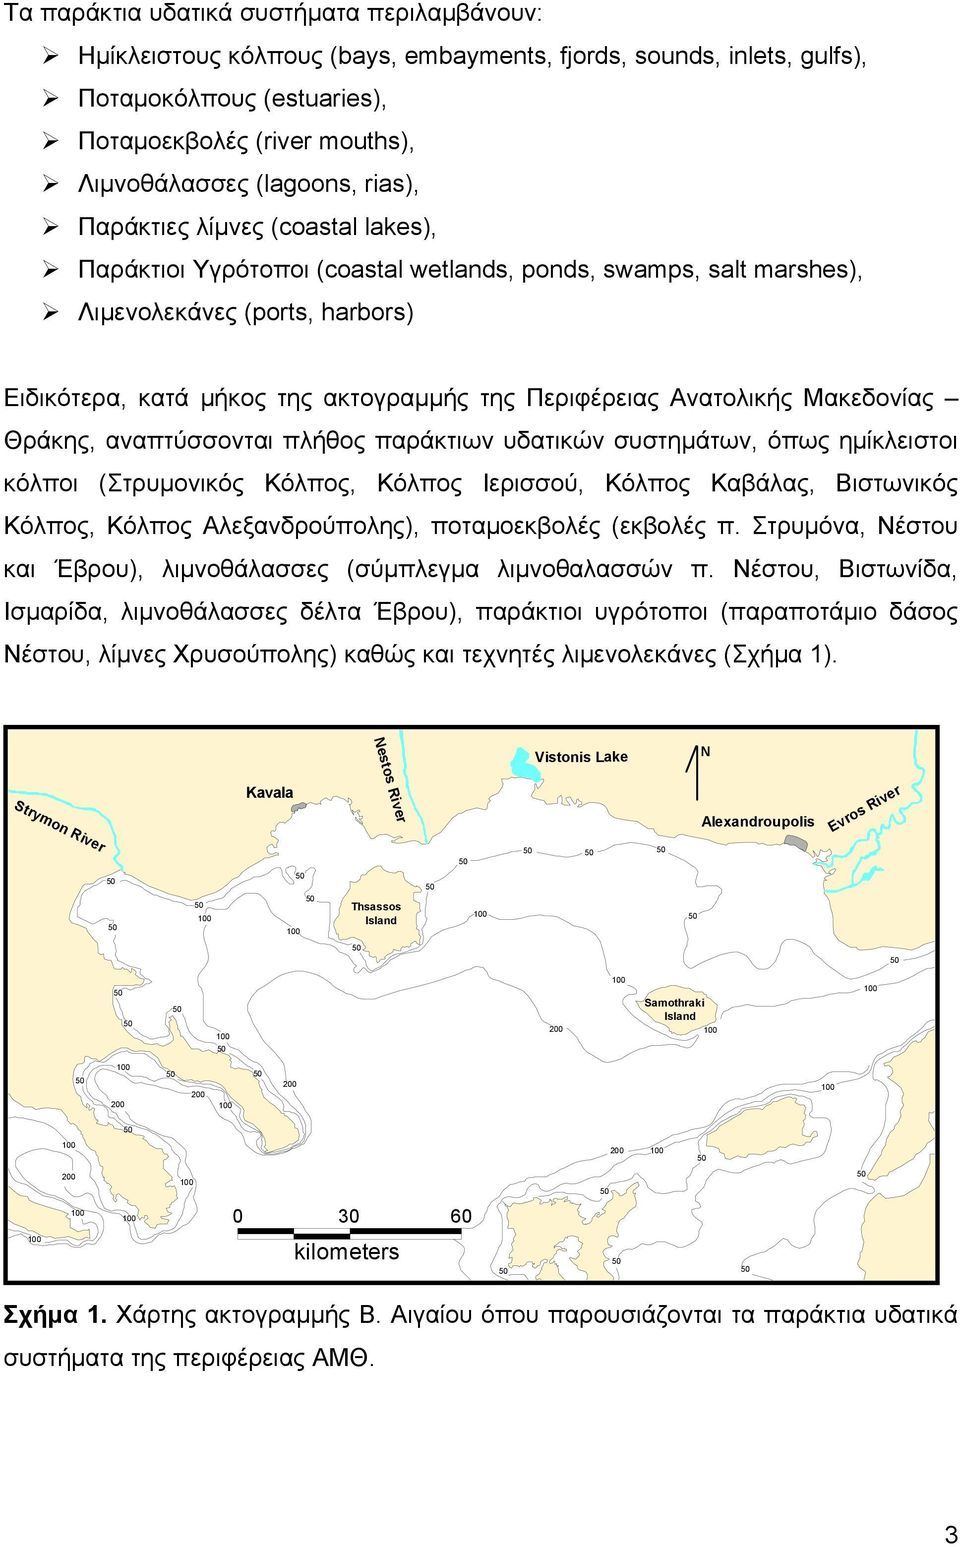 Ανατολικής Μακεδονίας Θράκης, αναπτύσσονται πλήθος παράκτιων υδατικών συστημάτων, όπως ημίκλειστοι κόλποι (Στρυμονικός Κόλπος, Κόλπος Ιερισσού, Κόλπος Καβάλας, Βιστωνικός Κόλπος, Κόλπος